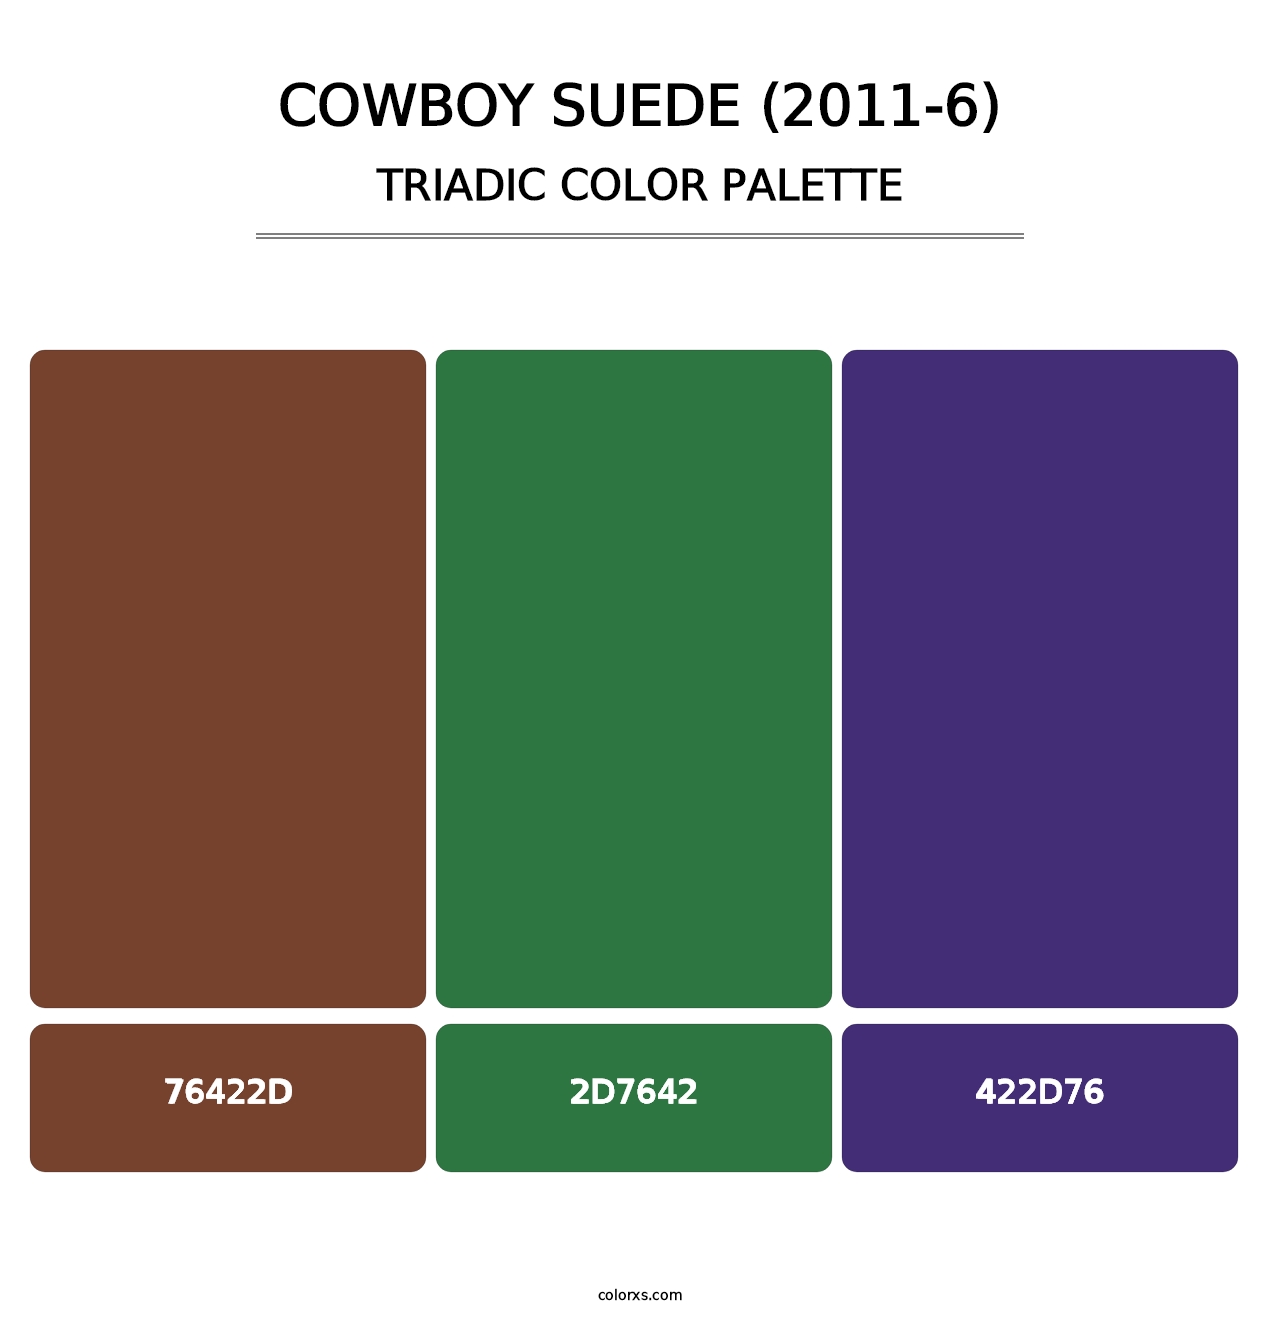 Cowboy Suede (2011-6) - Triadic Color Palette